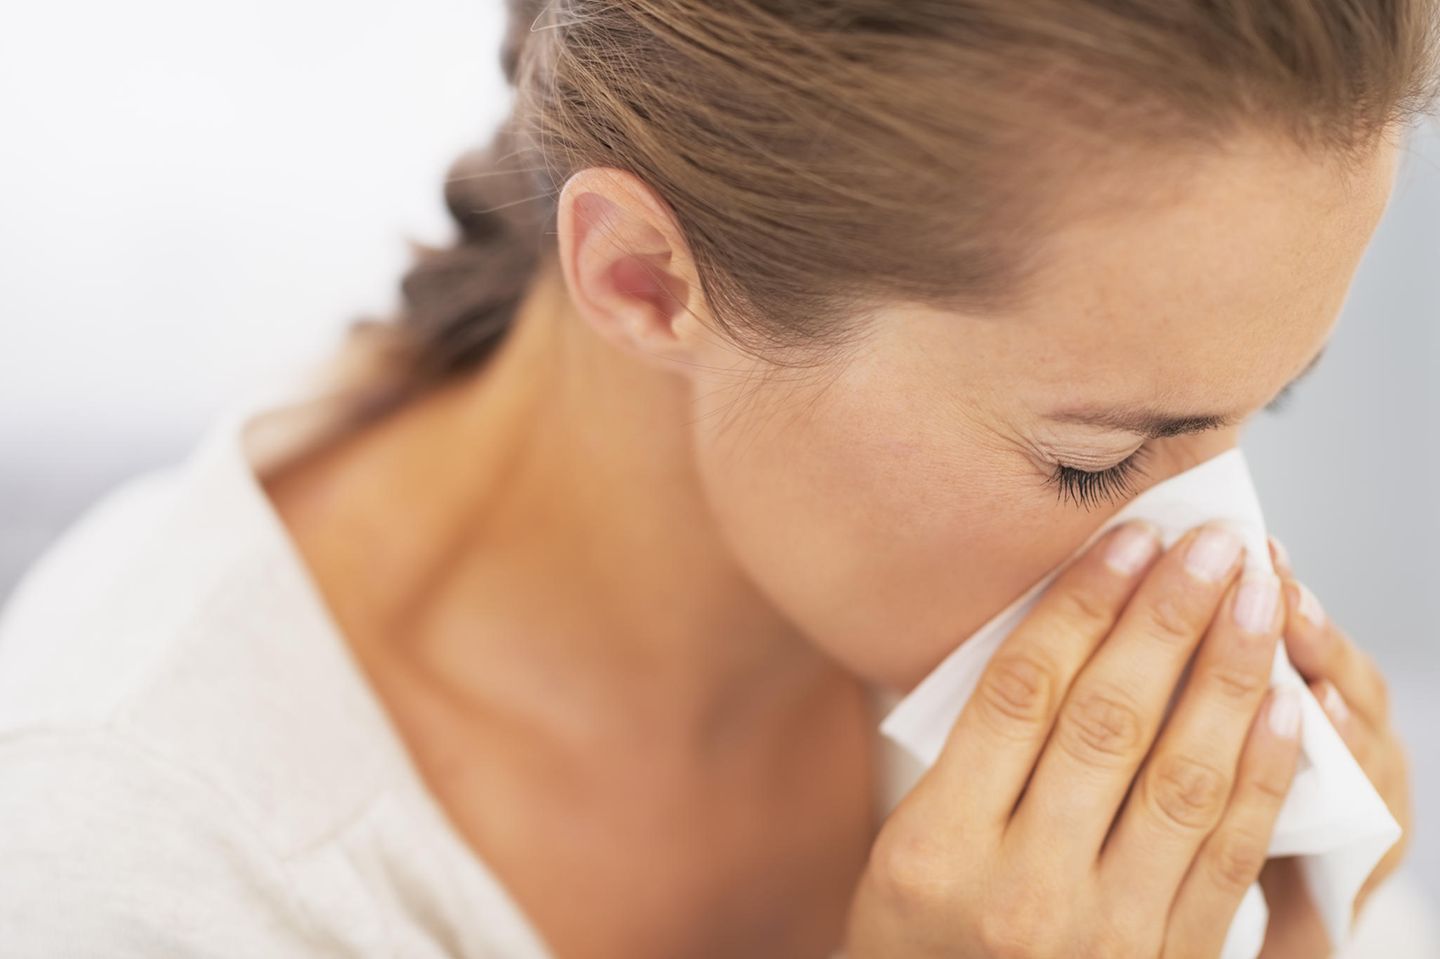 Allergie während Corona: Frau putzt ihre Nase